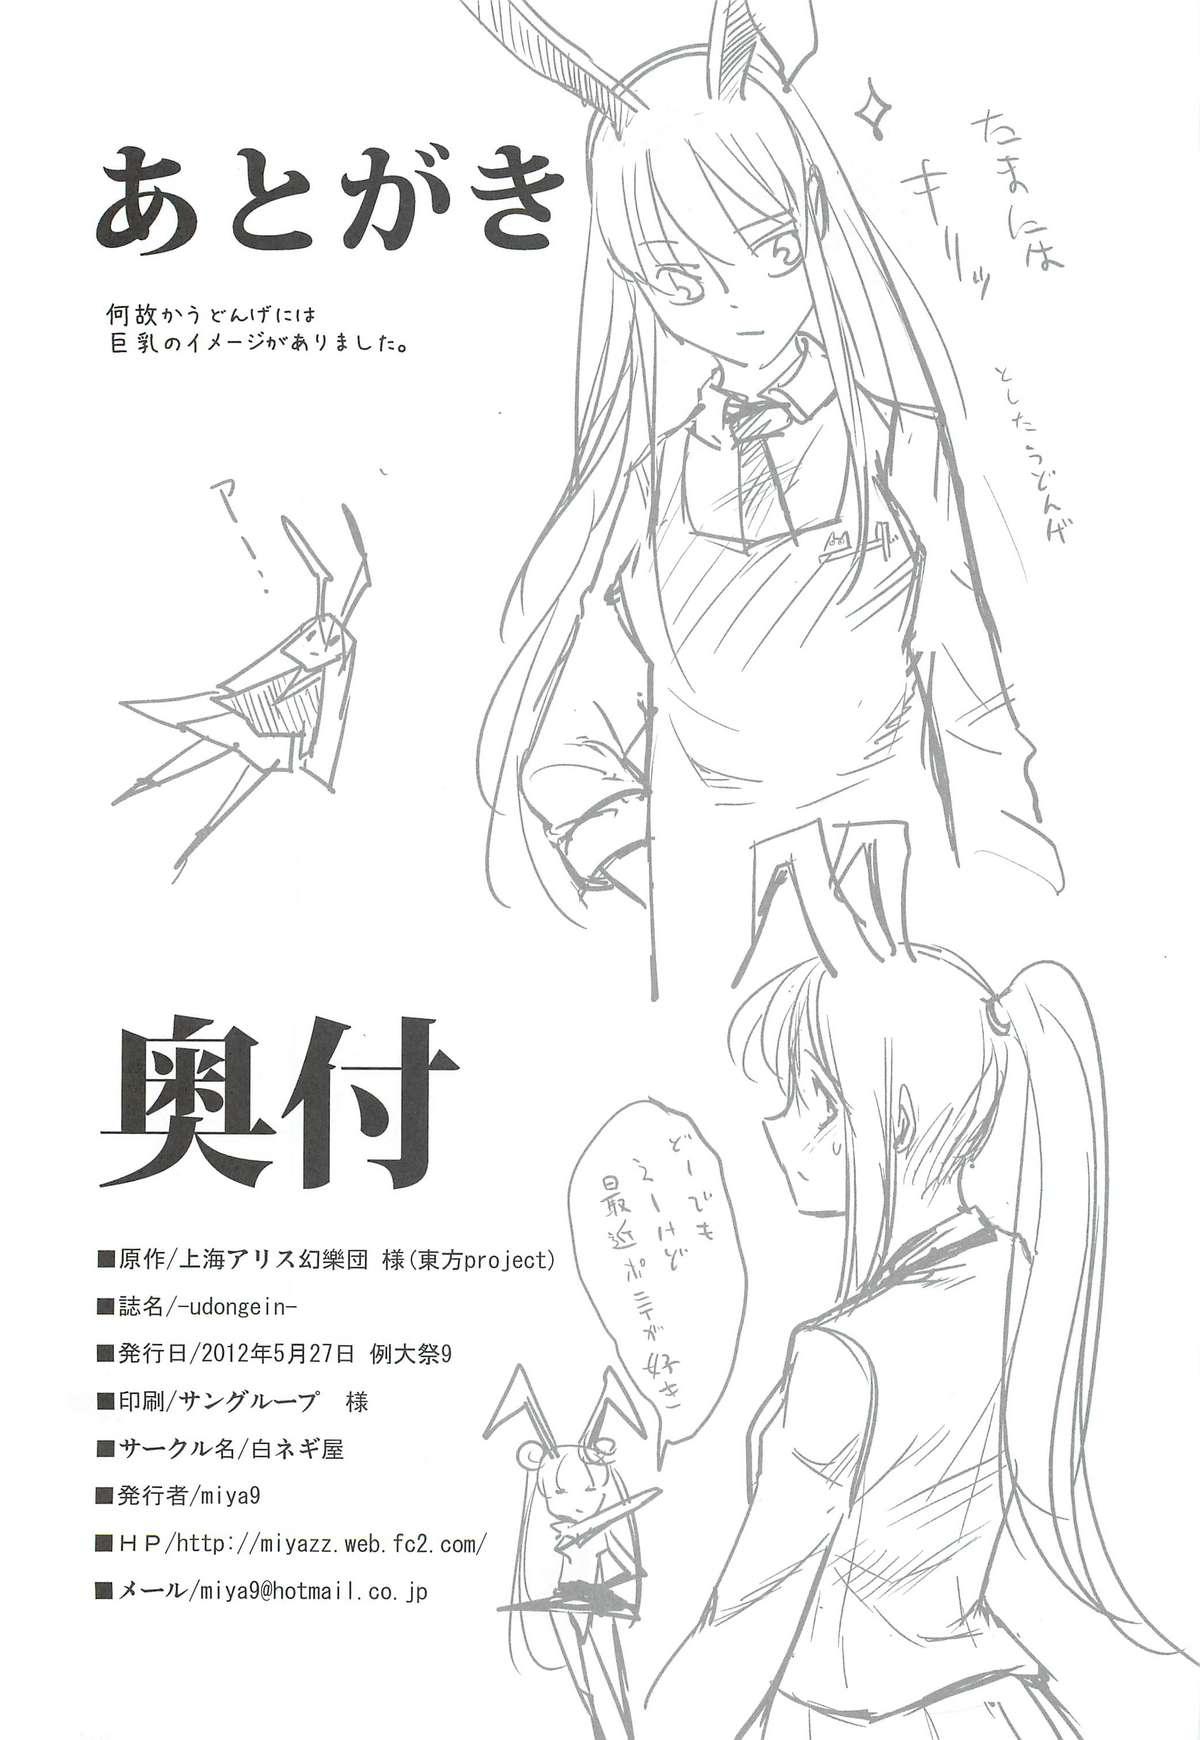 Sologirl (Reitaisai 9) [Shironegiya (miya9)] -udongein- (Touhou Project) - Touhou project Transvestite - Page 25